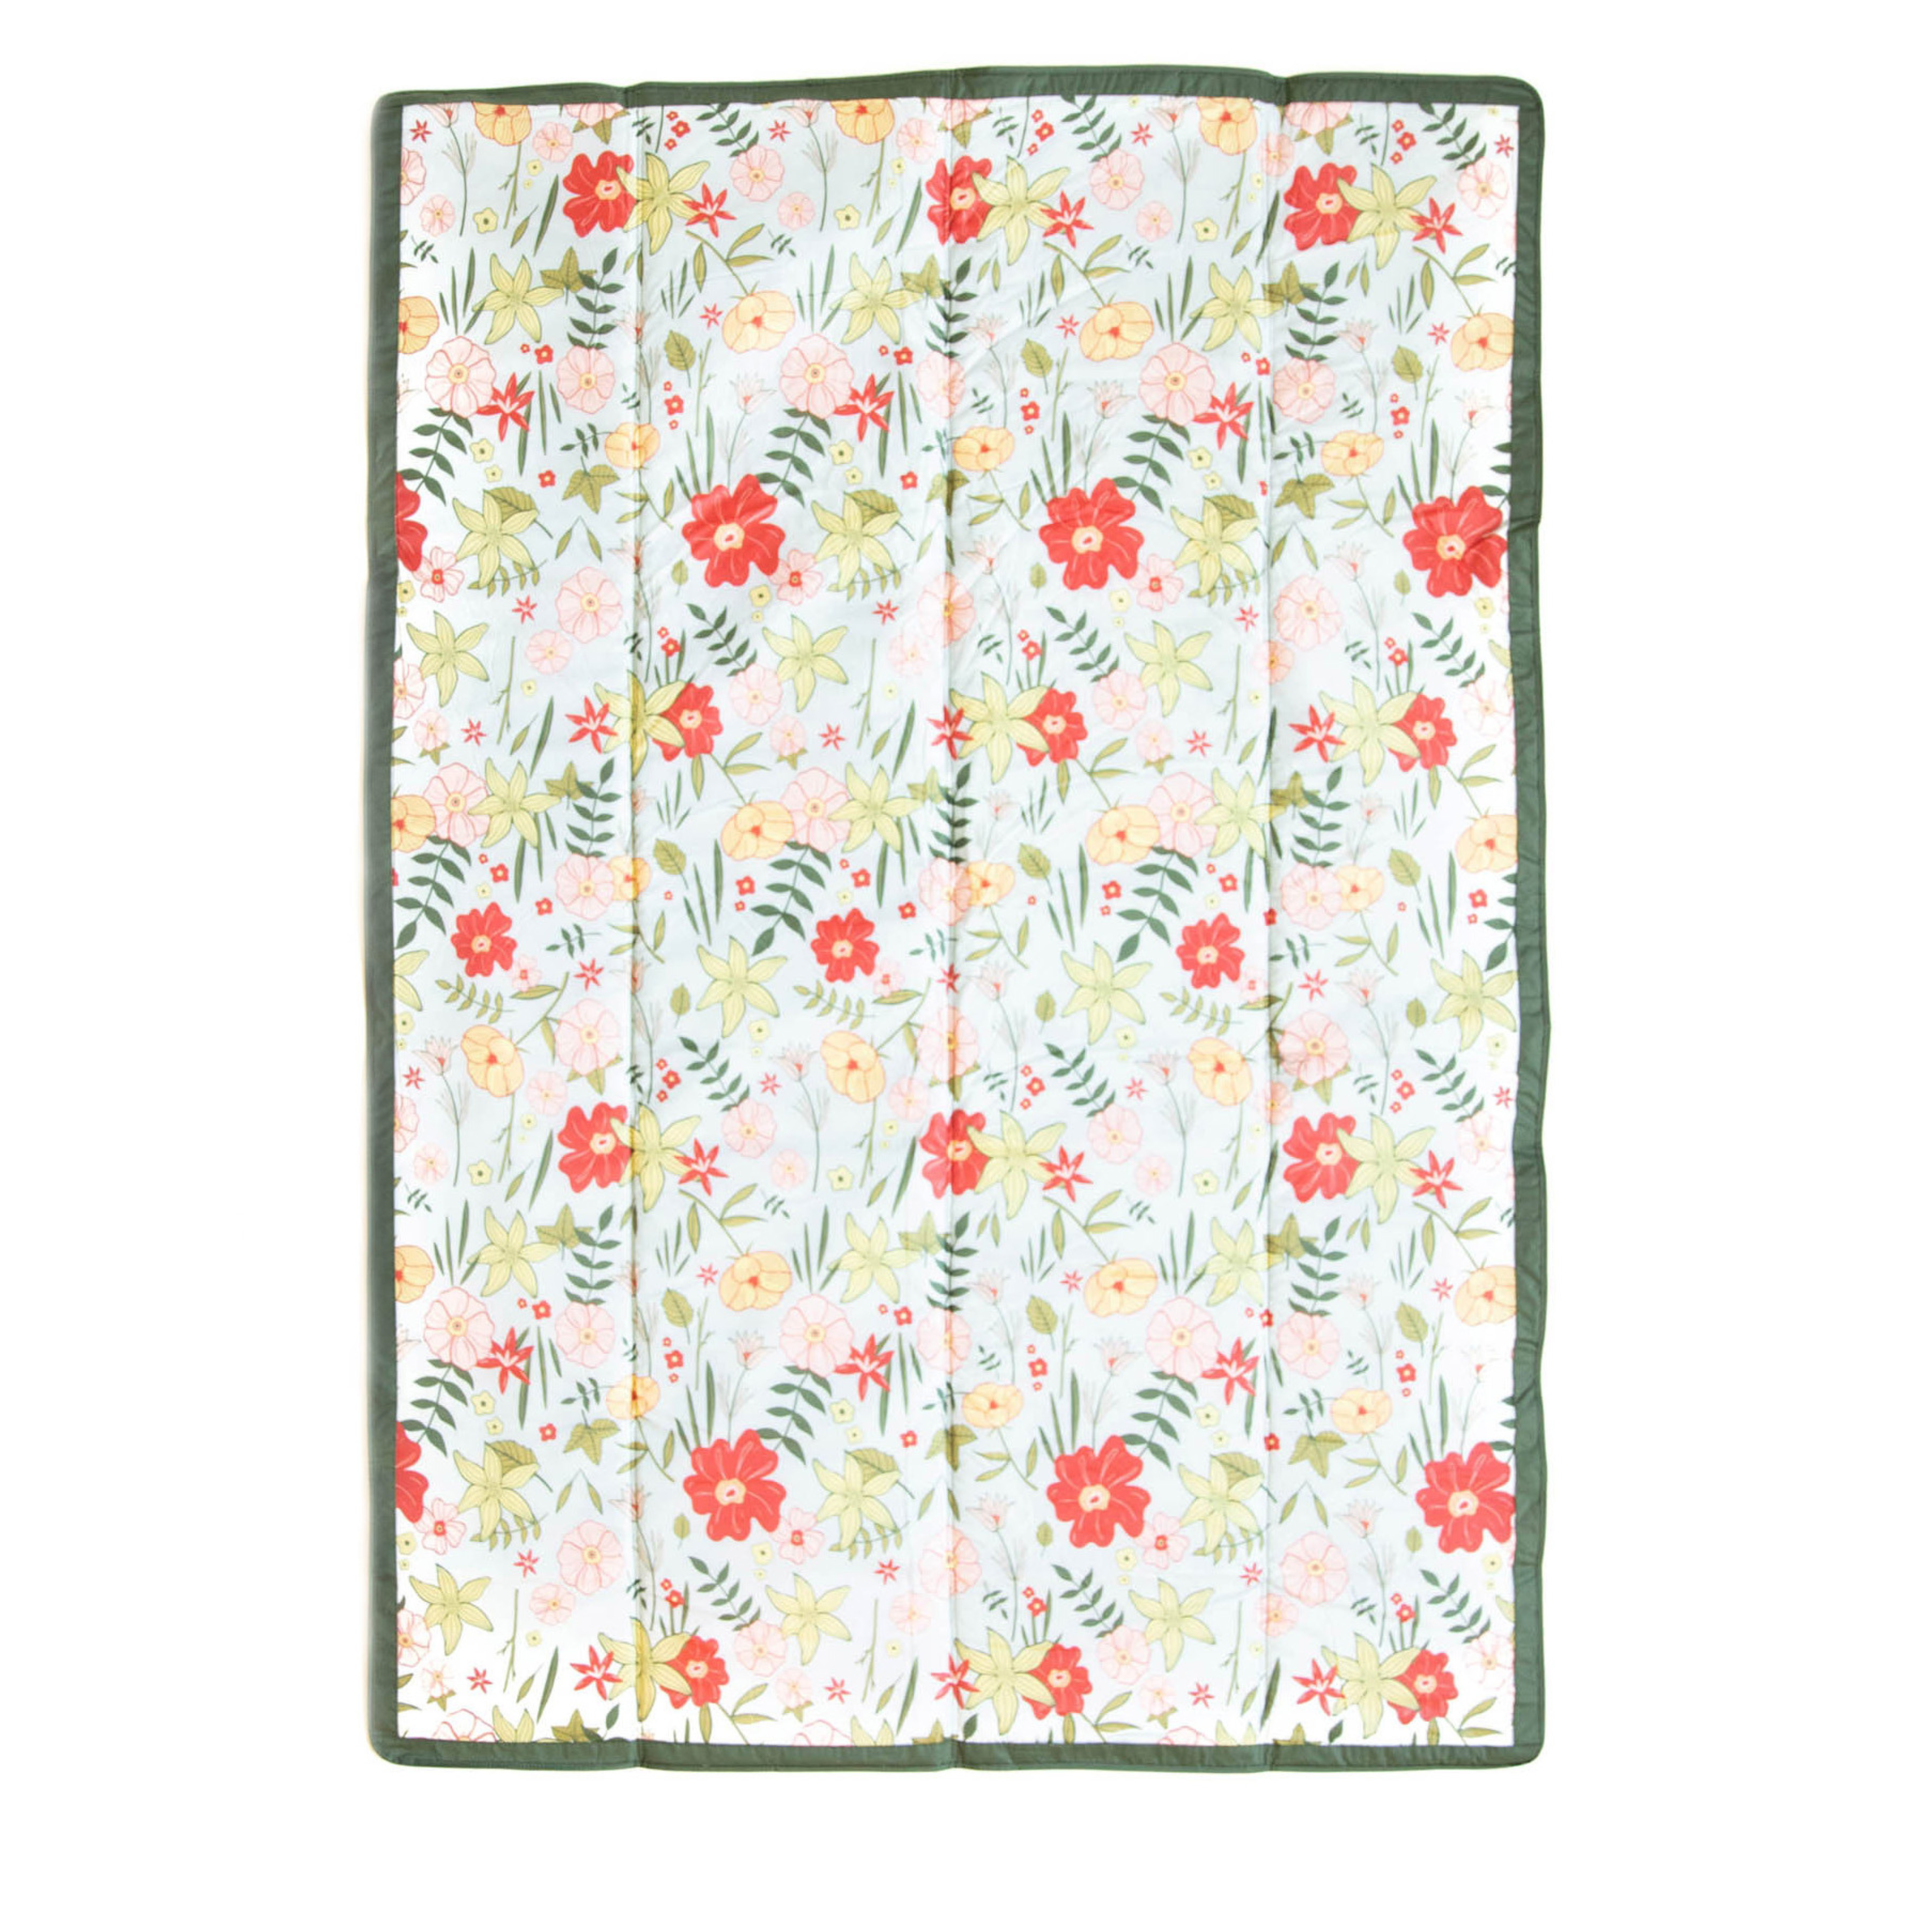 150 x 210 cm Outdoor Blanket - Primrose Patch